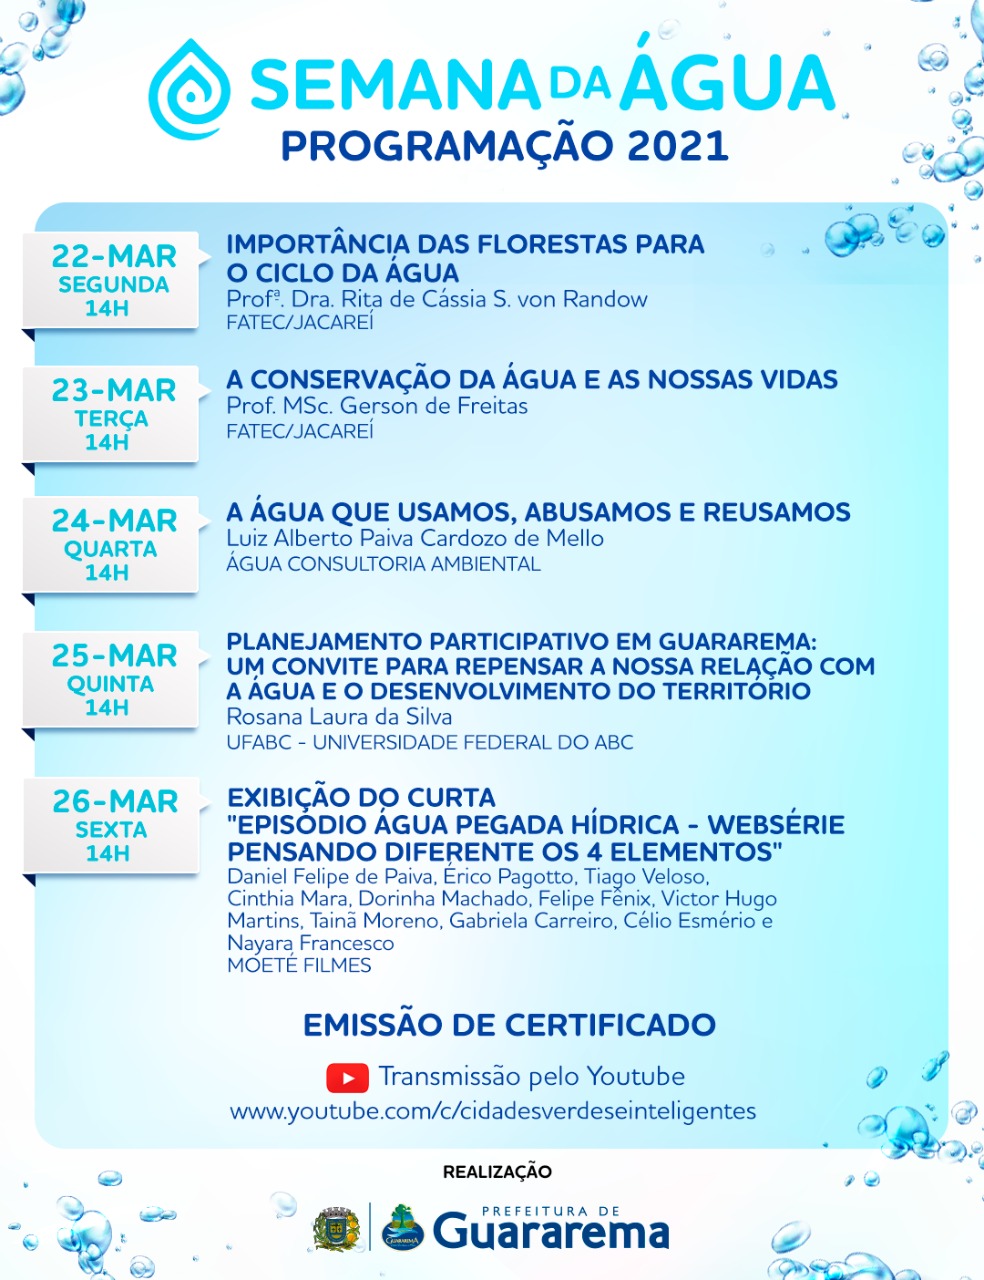 Guararema oferece palestras com certificado sobre a semana da água